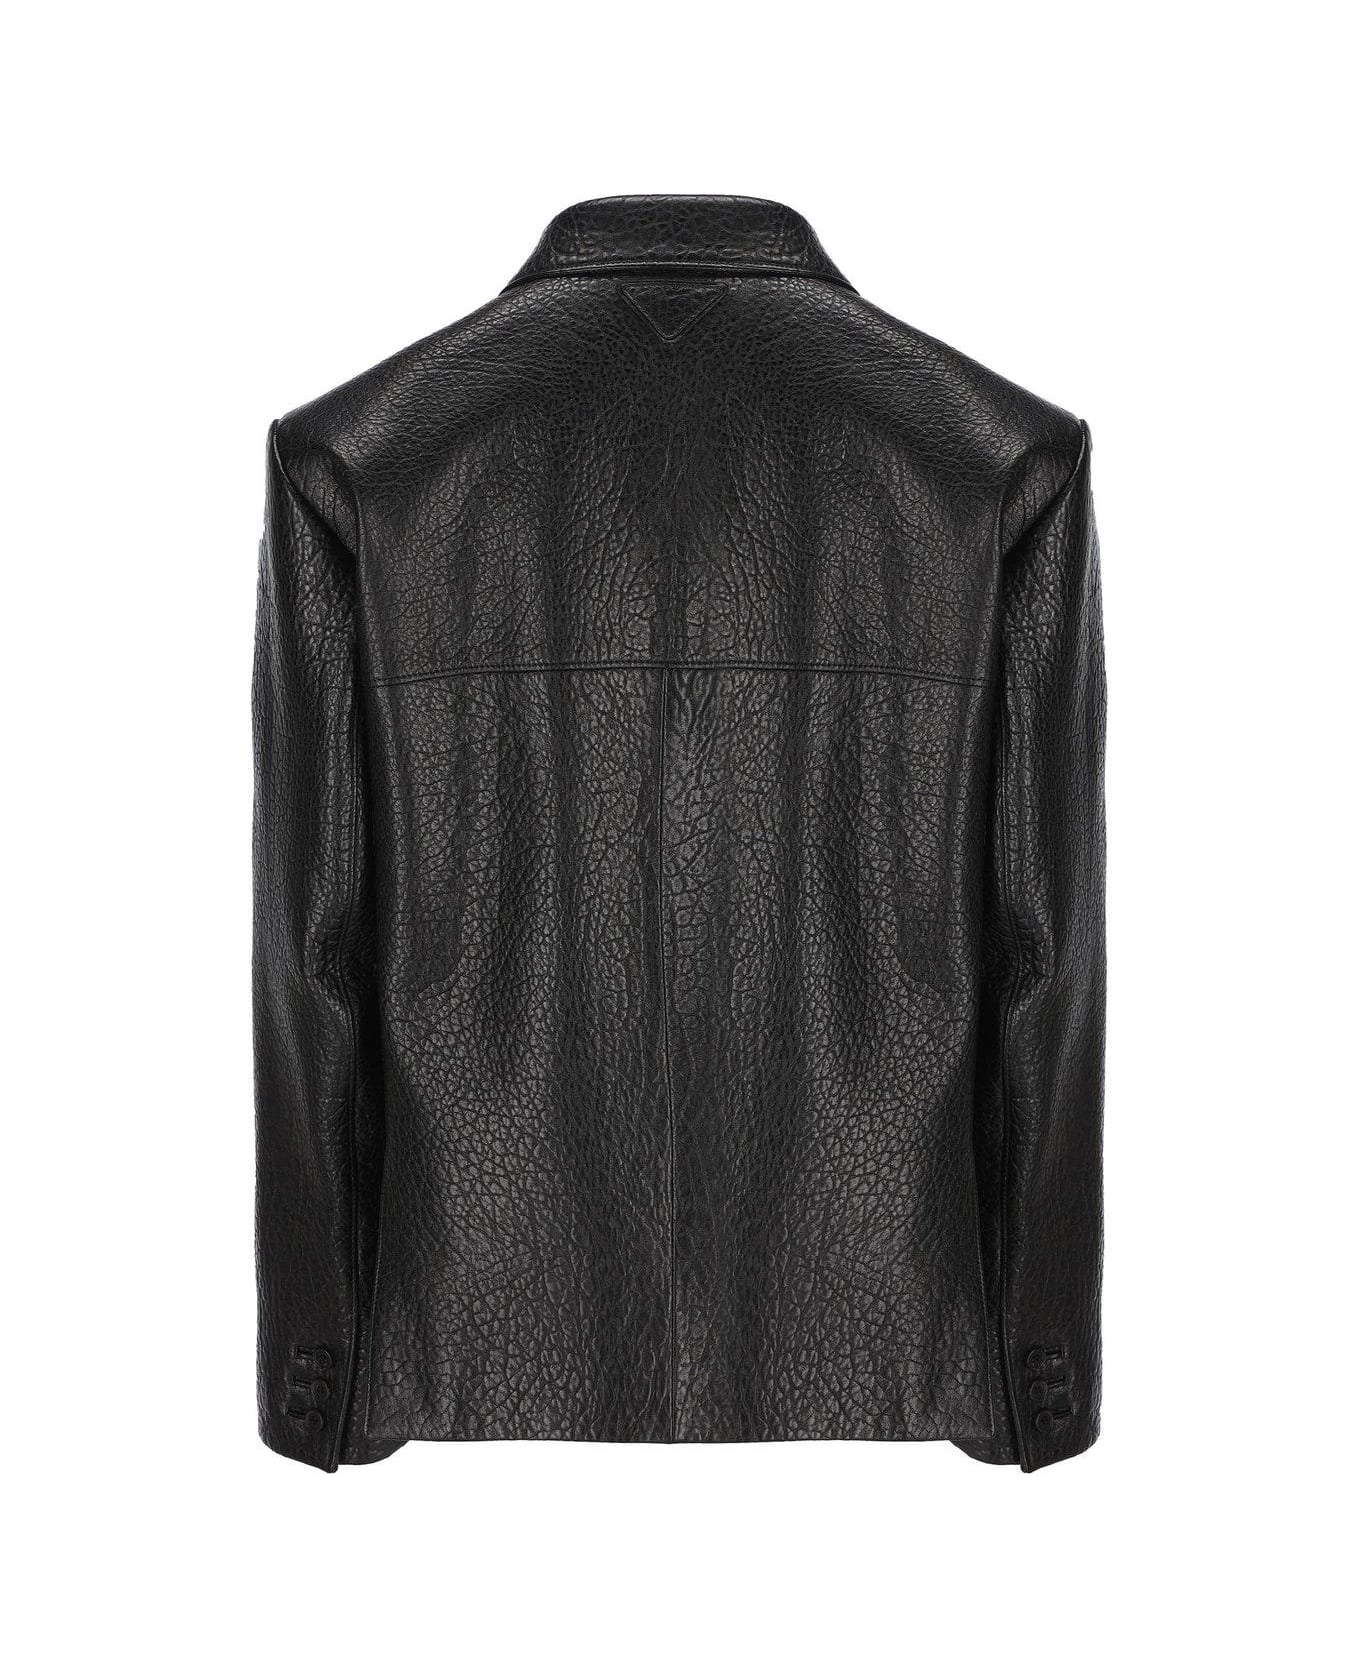 Prada Single-breasted Long-sleeved Leather Jacket - Nero